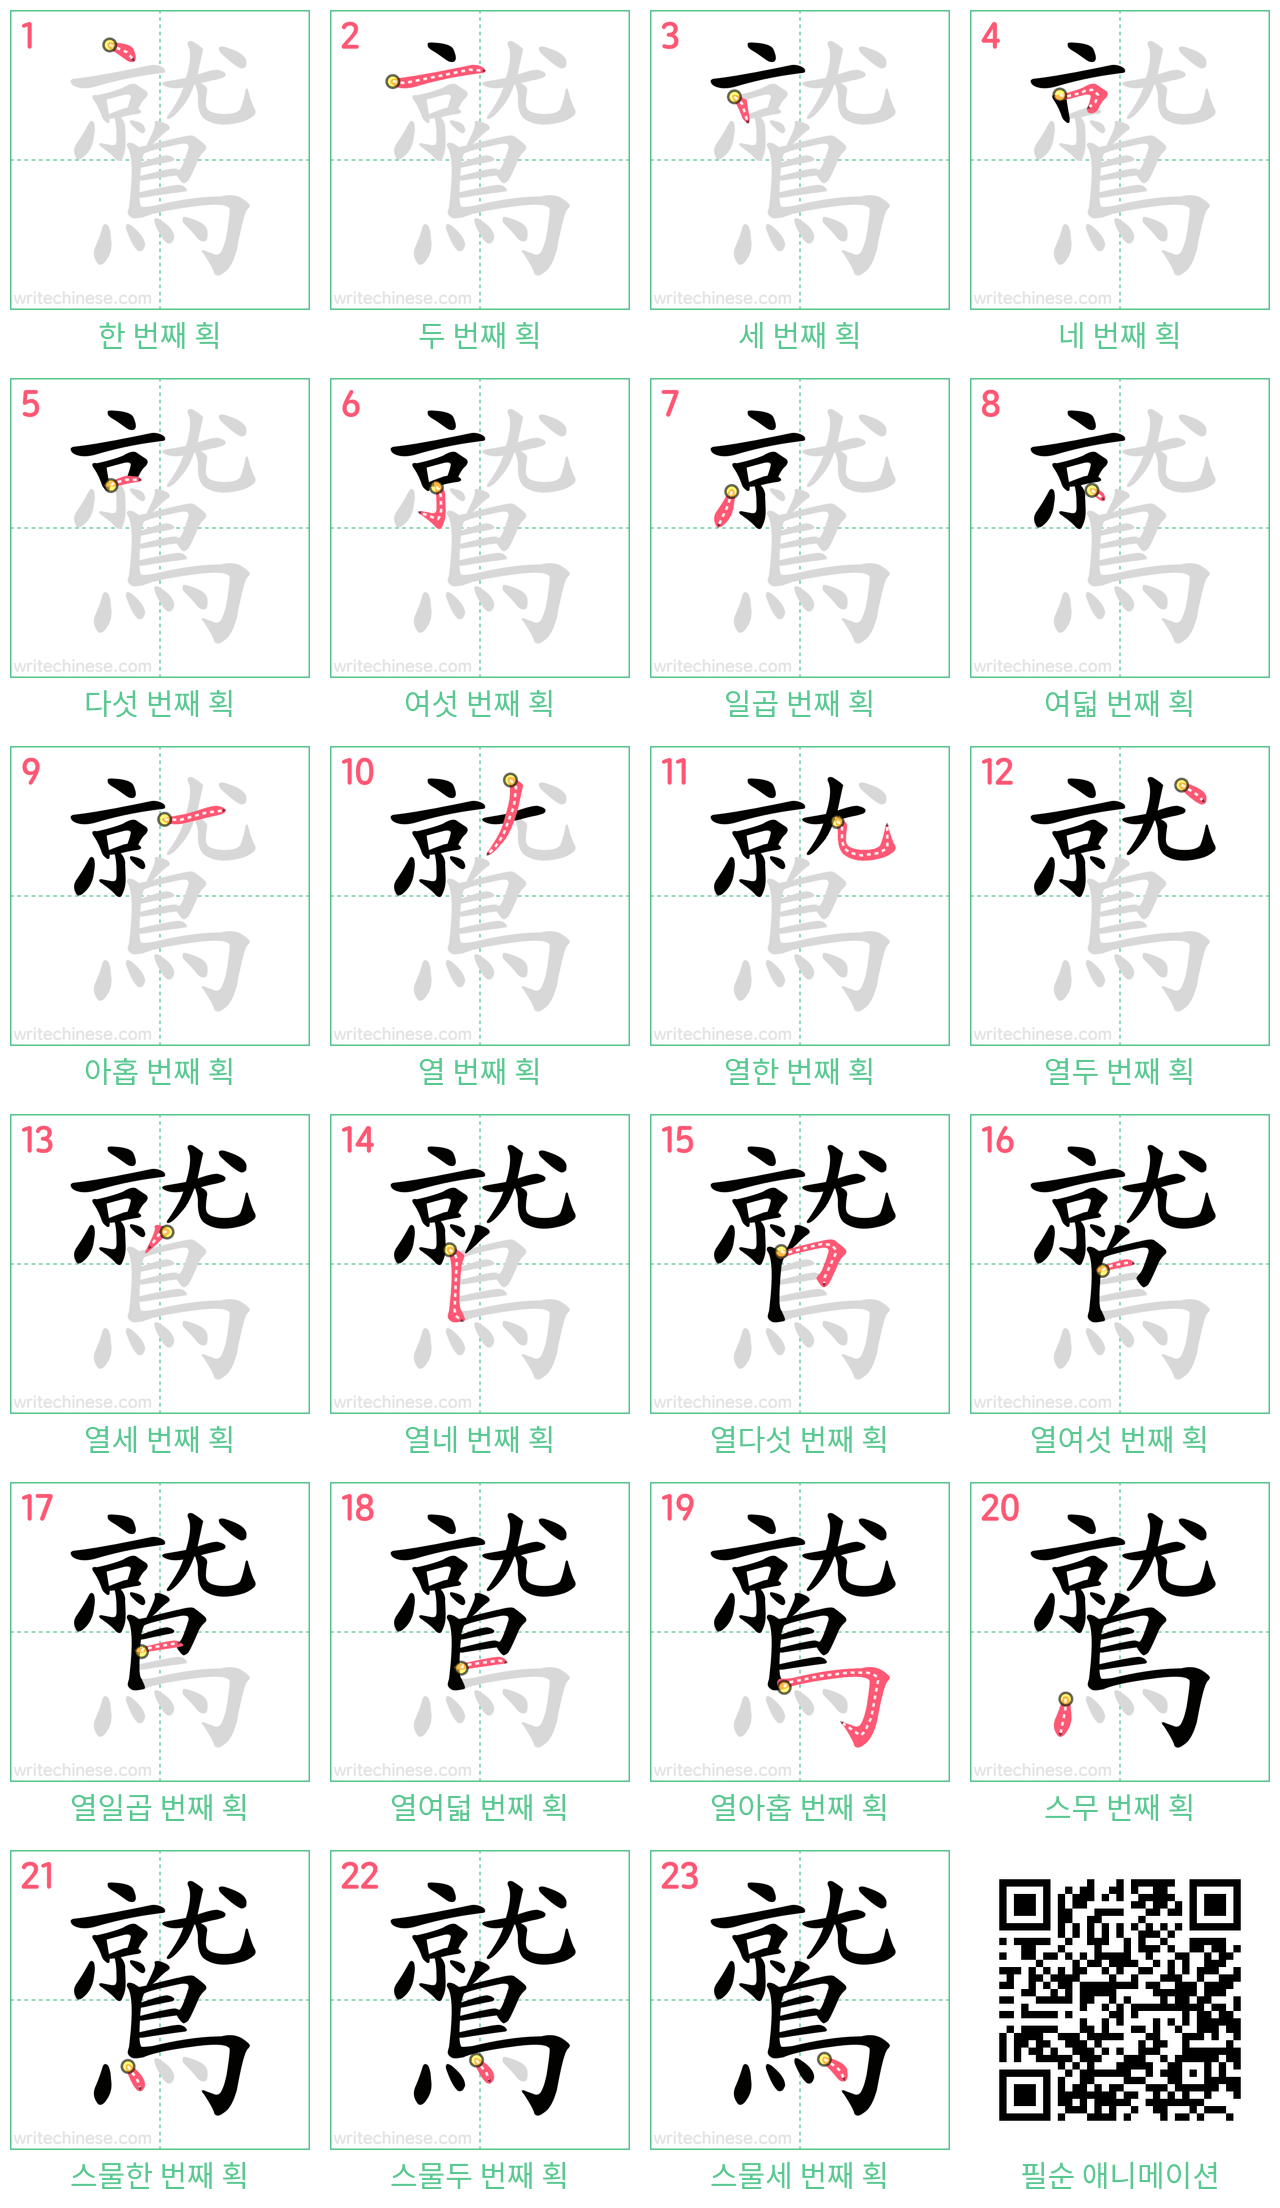 鷲 step-by-step stroke order diagrams